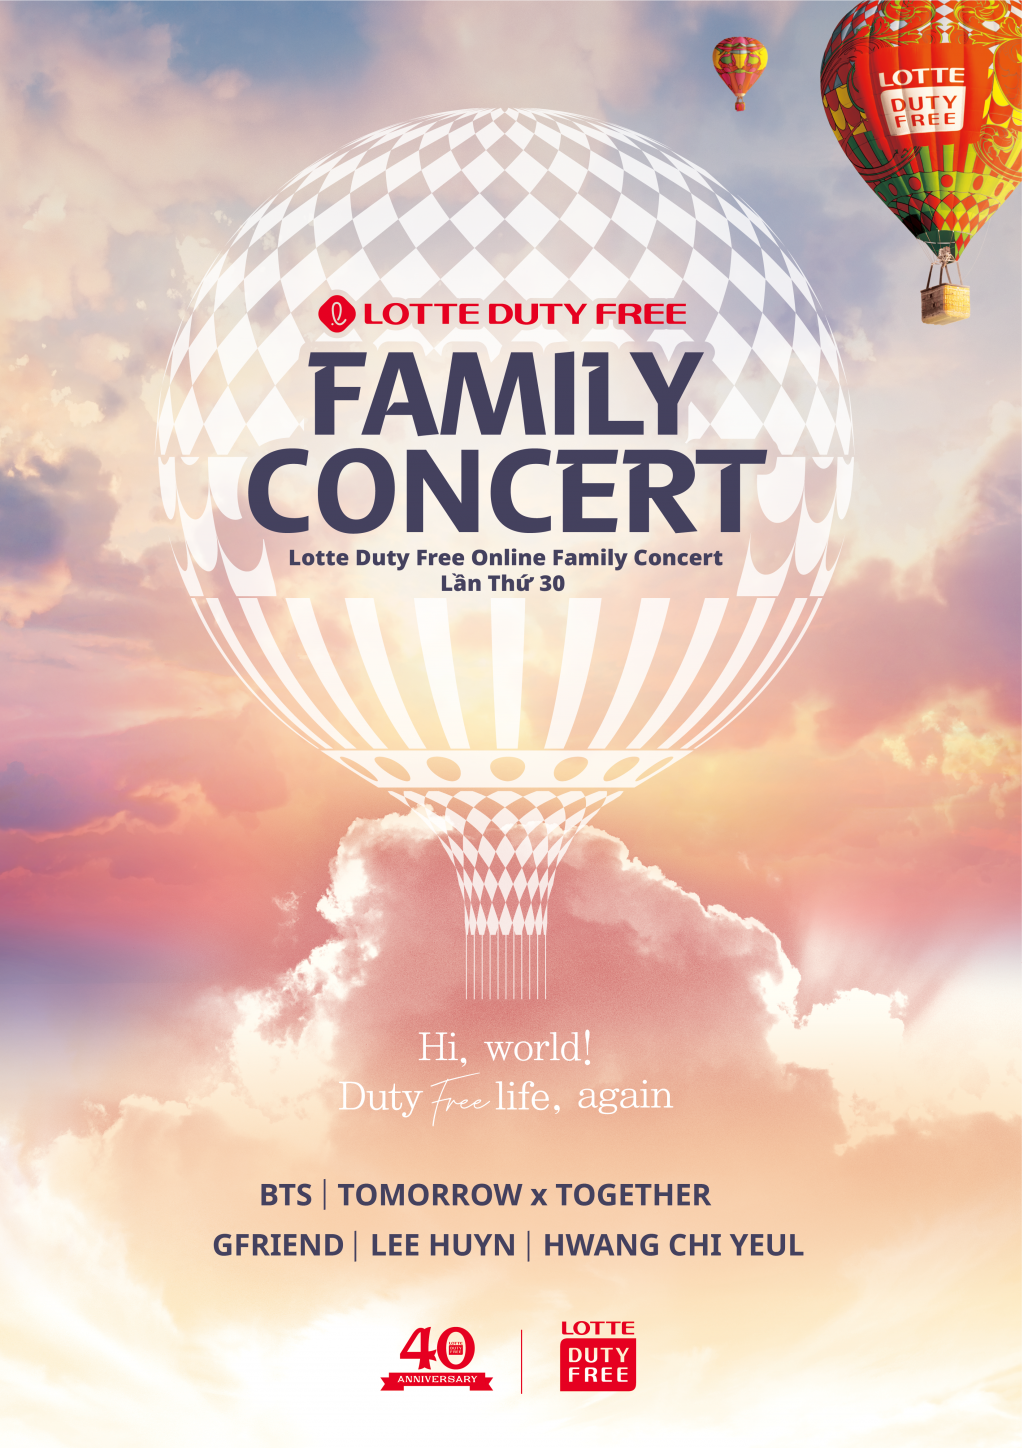 2037 1 lotte duty free family concert 2020 duoc to chuc online voi bts gfriend